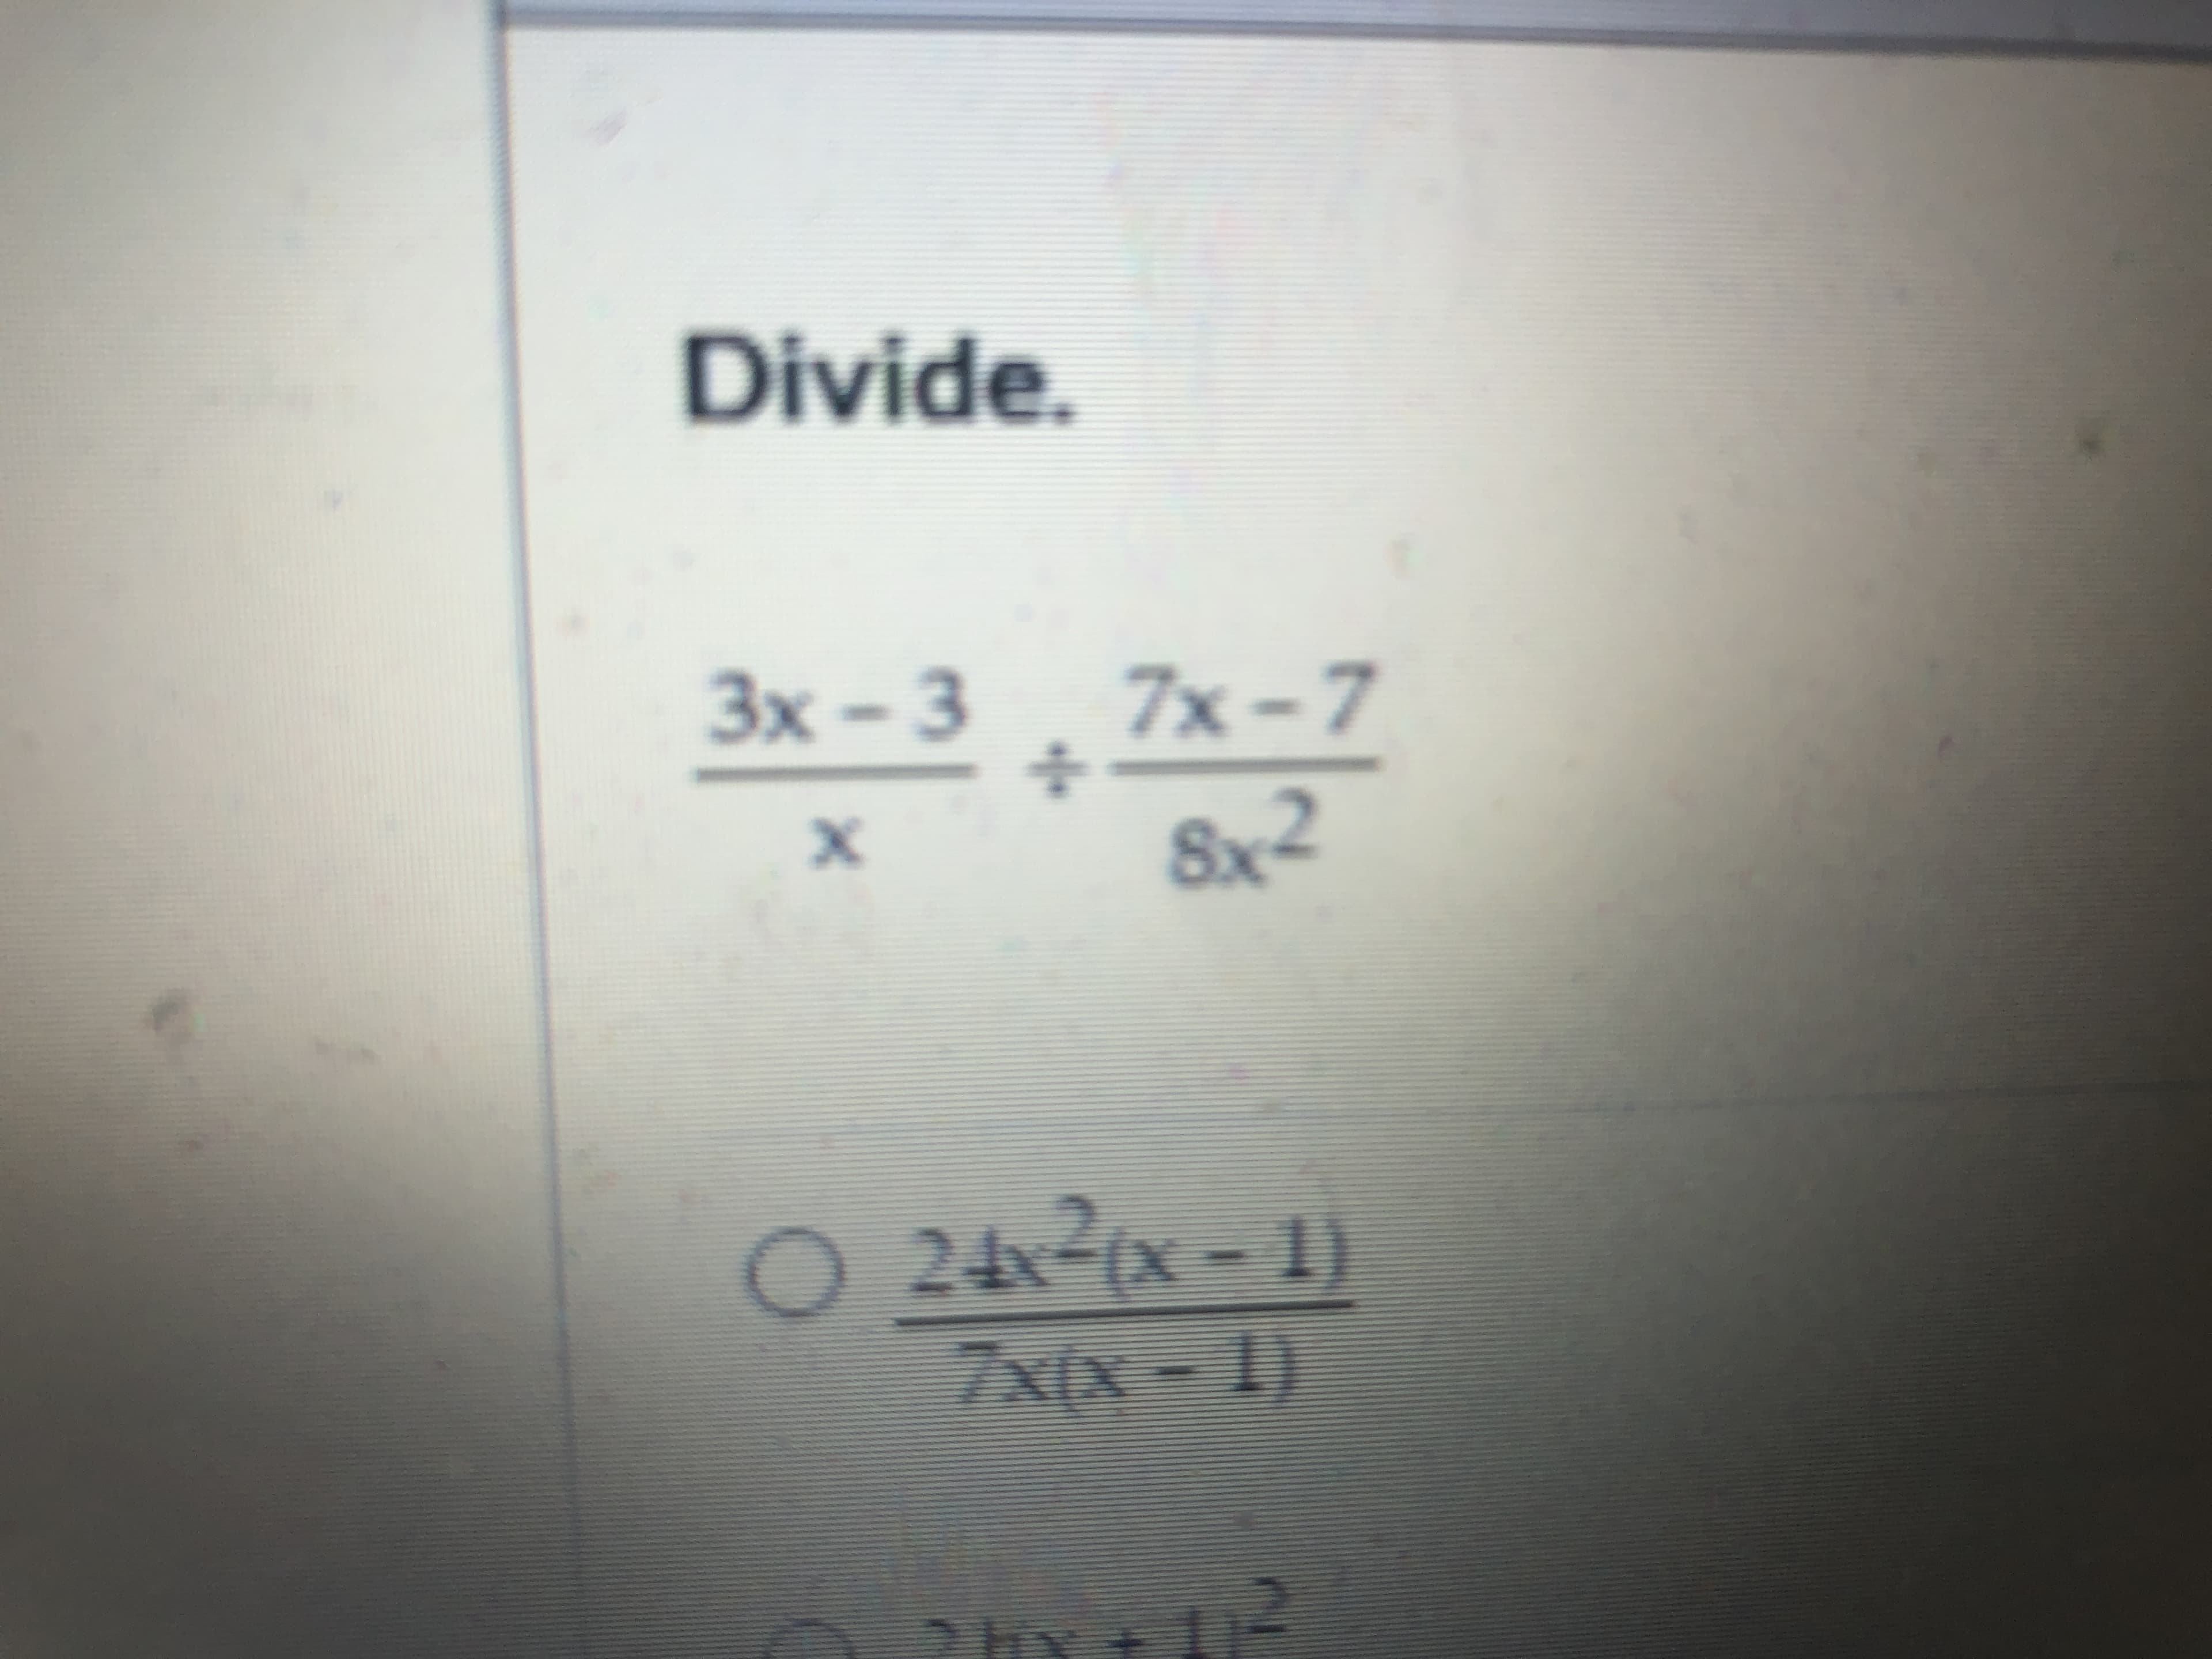 Divide.
3x – 3 7x - 7
Sx2
24 (x - 1)
7x(x - 1)
